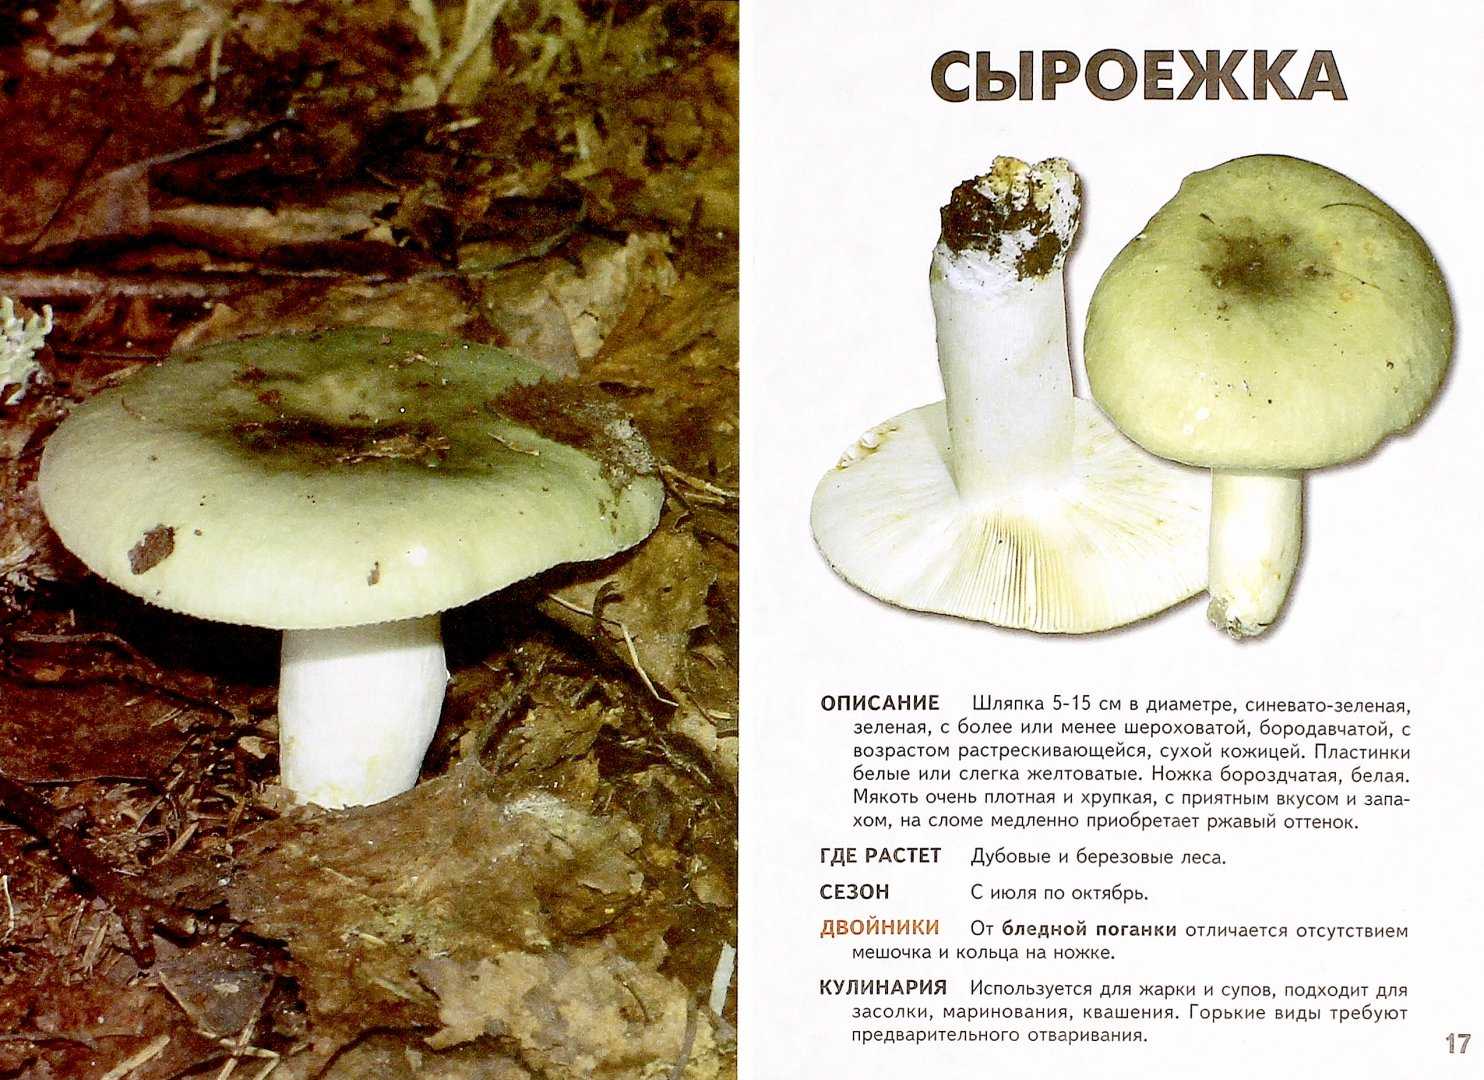 ✅ съедобные грибы - классификация, категории, особенности - iam-fighter.ru